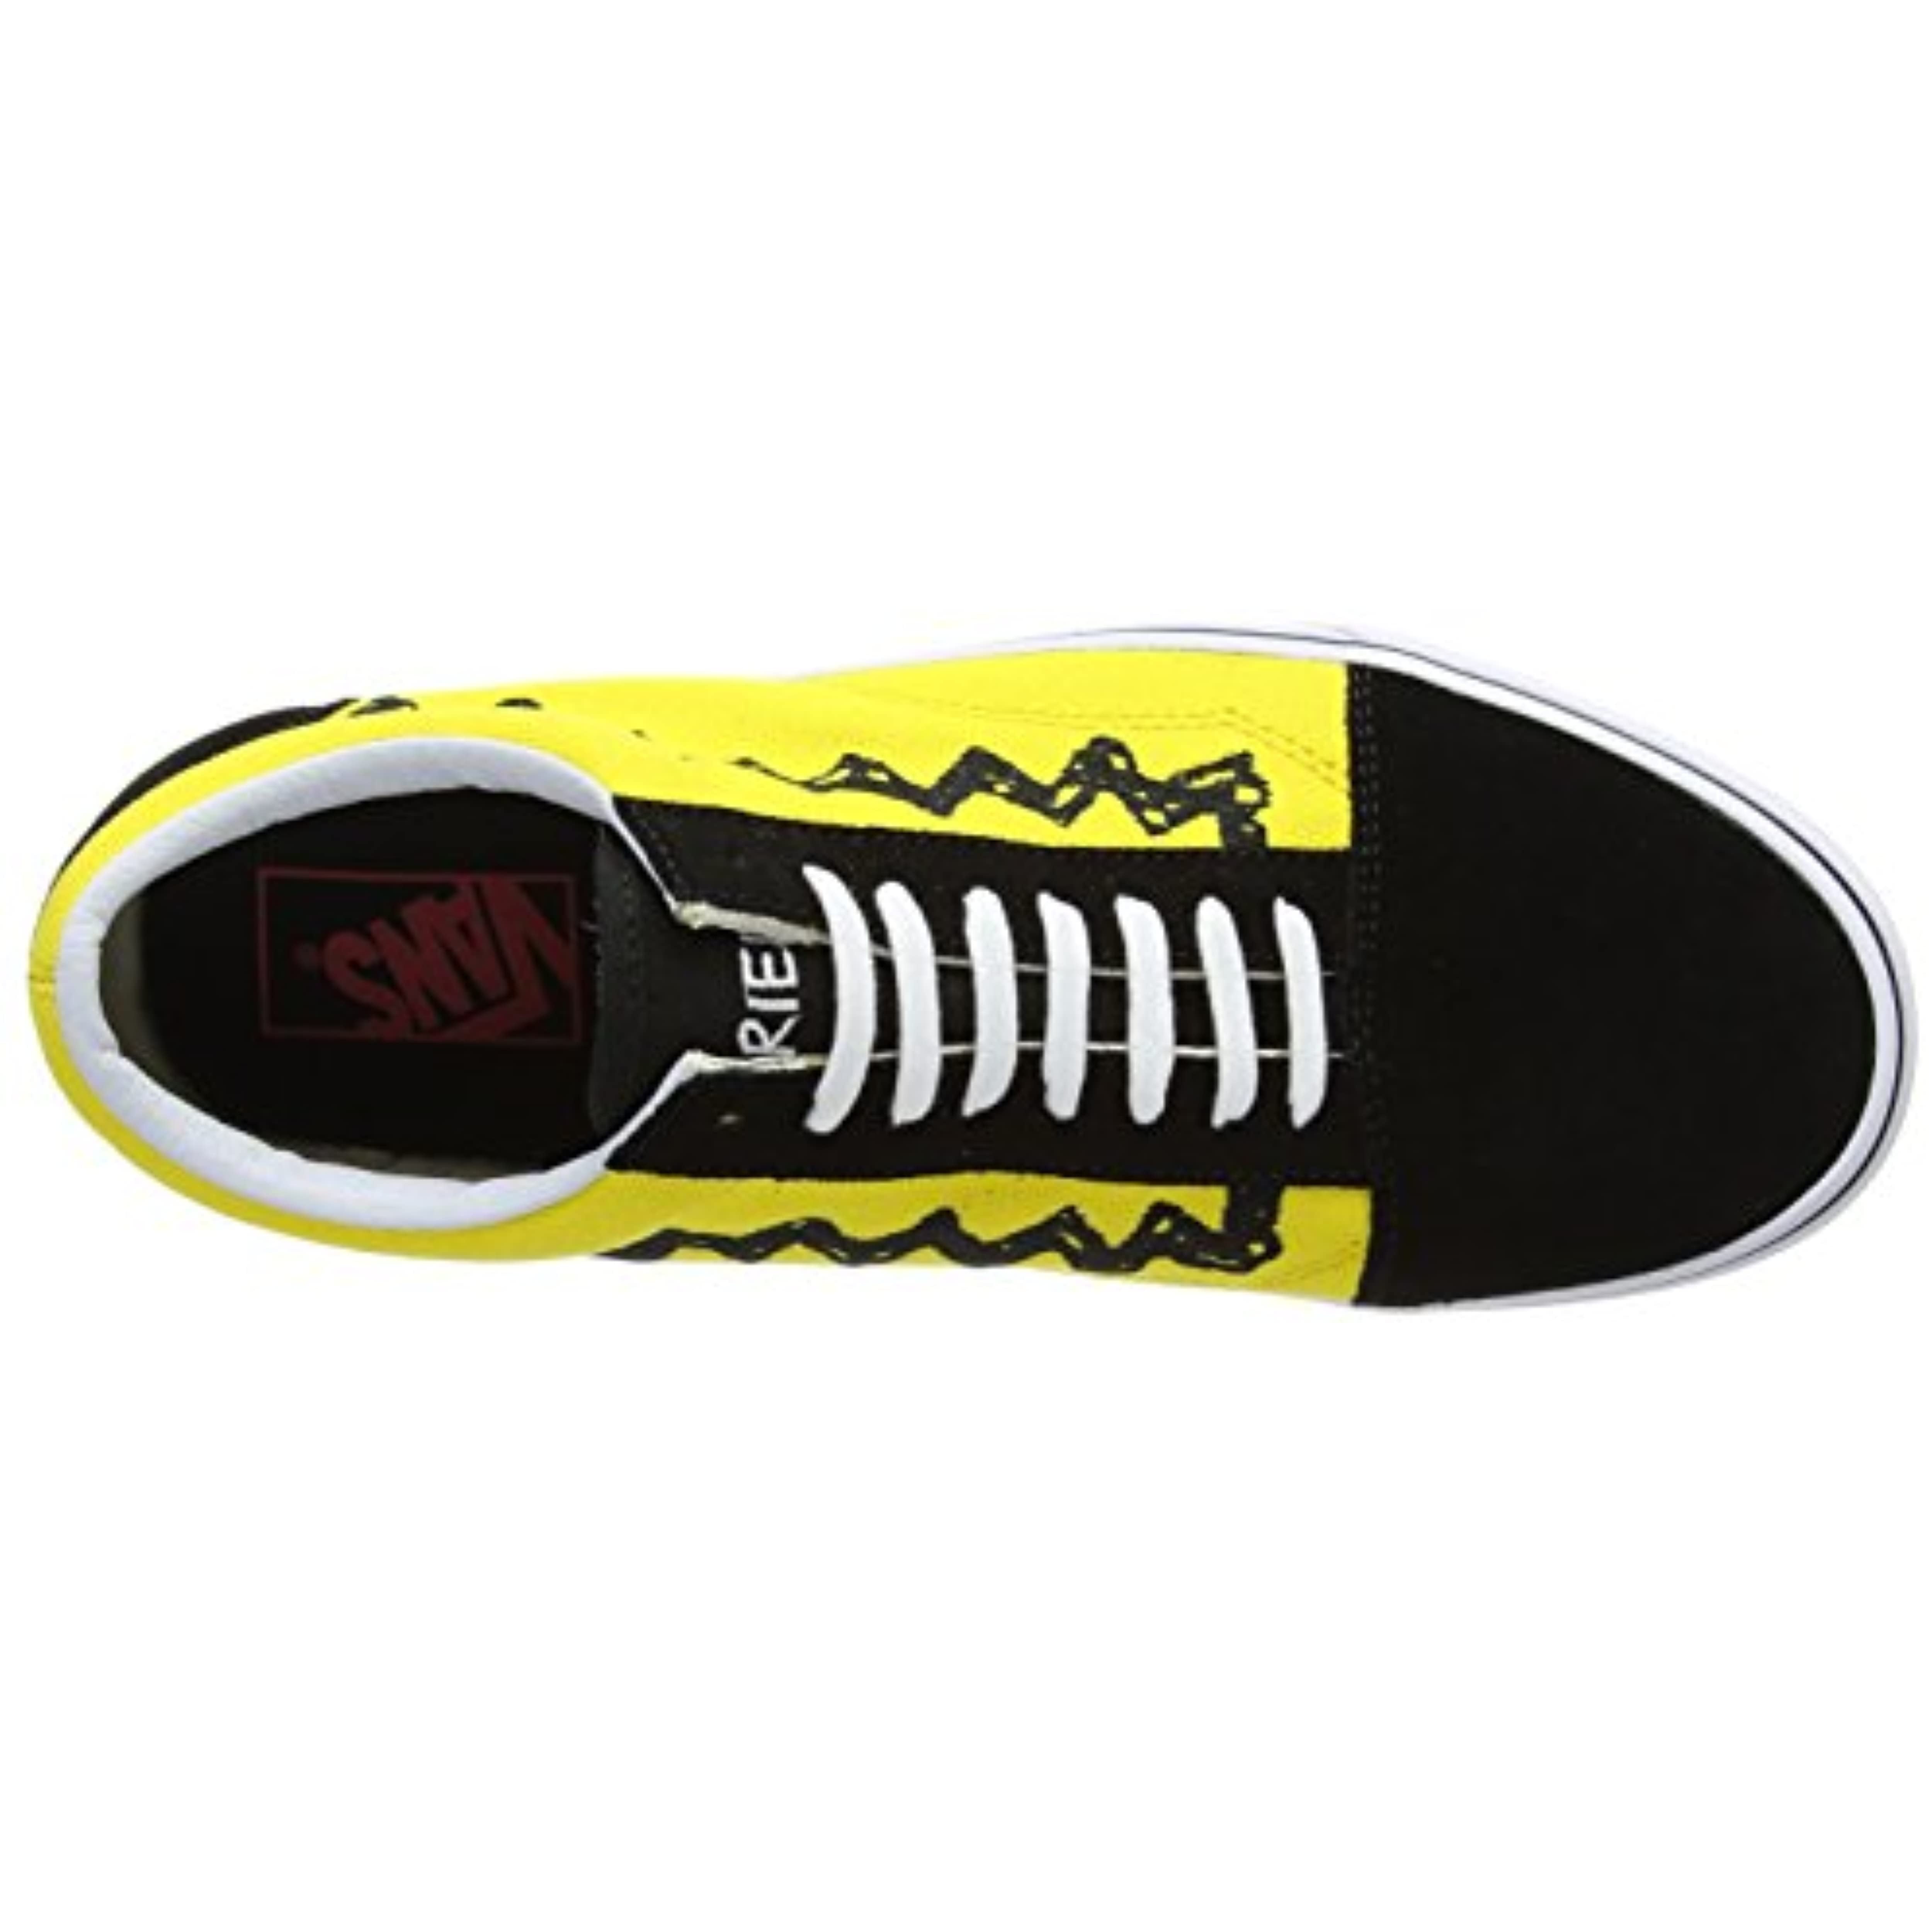 Saucer vene Spil VANS Old Skool Sneakers Charlie Brown/ Black - Walmart.com